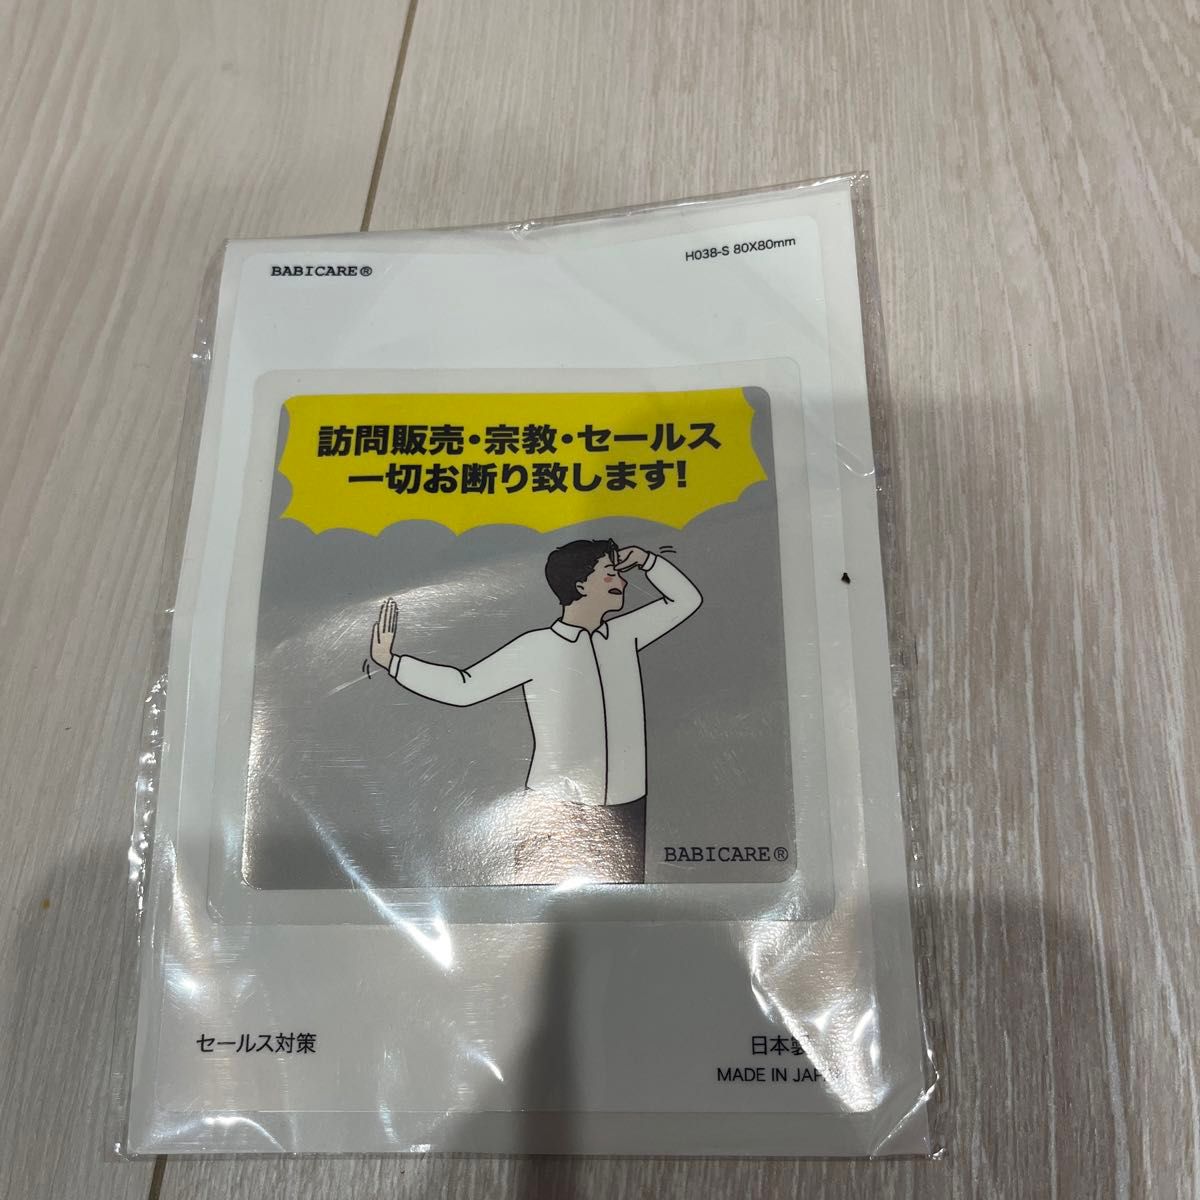 BABICARE 日本製 チラシ・勧誘印刷物  シール/ステッカー 